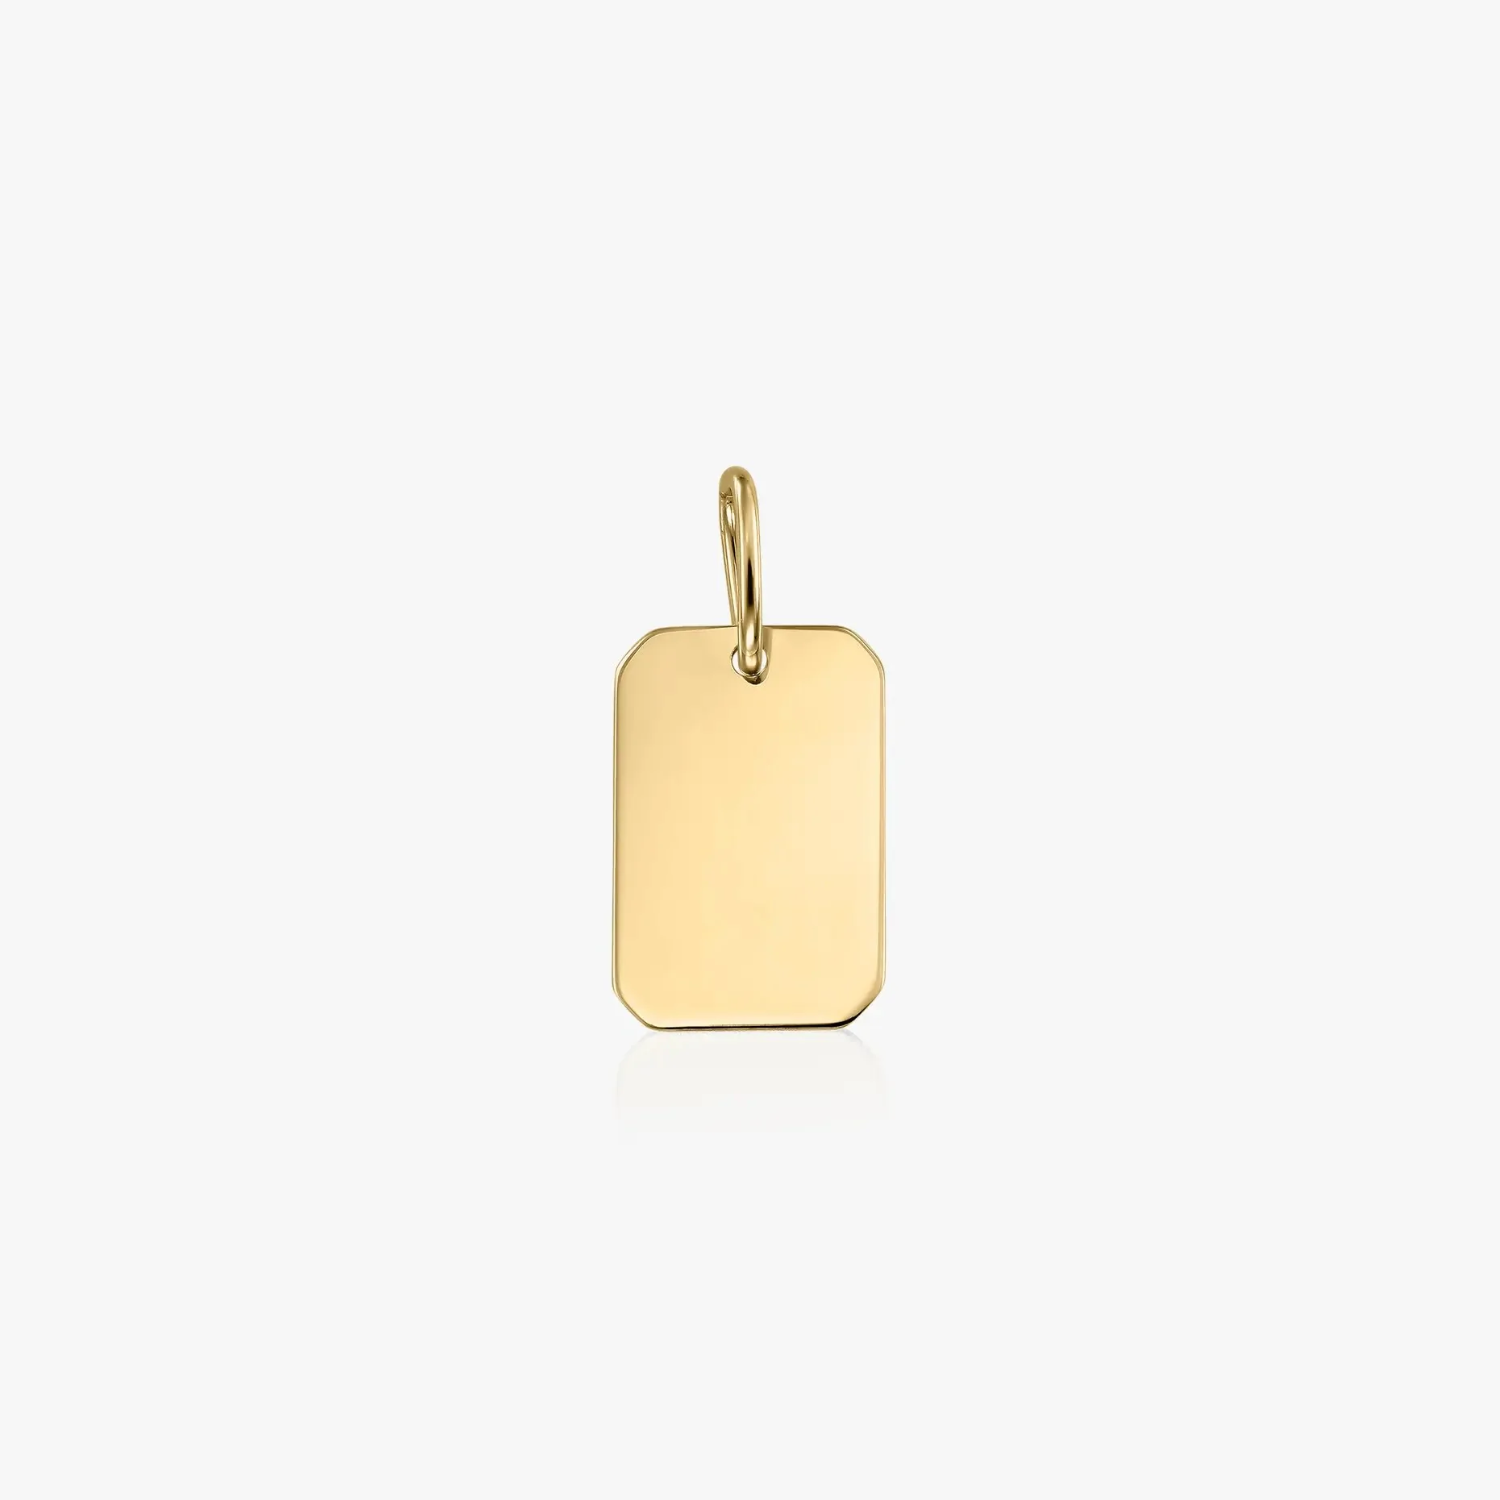 Rectangle gold pendant - engravable